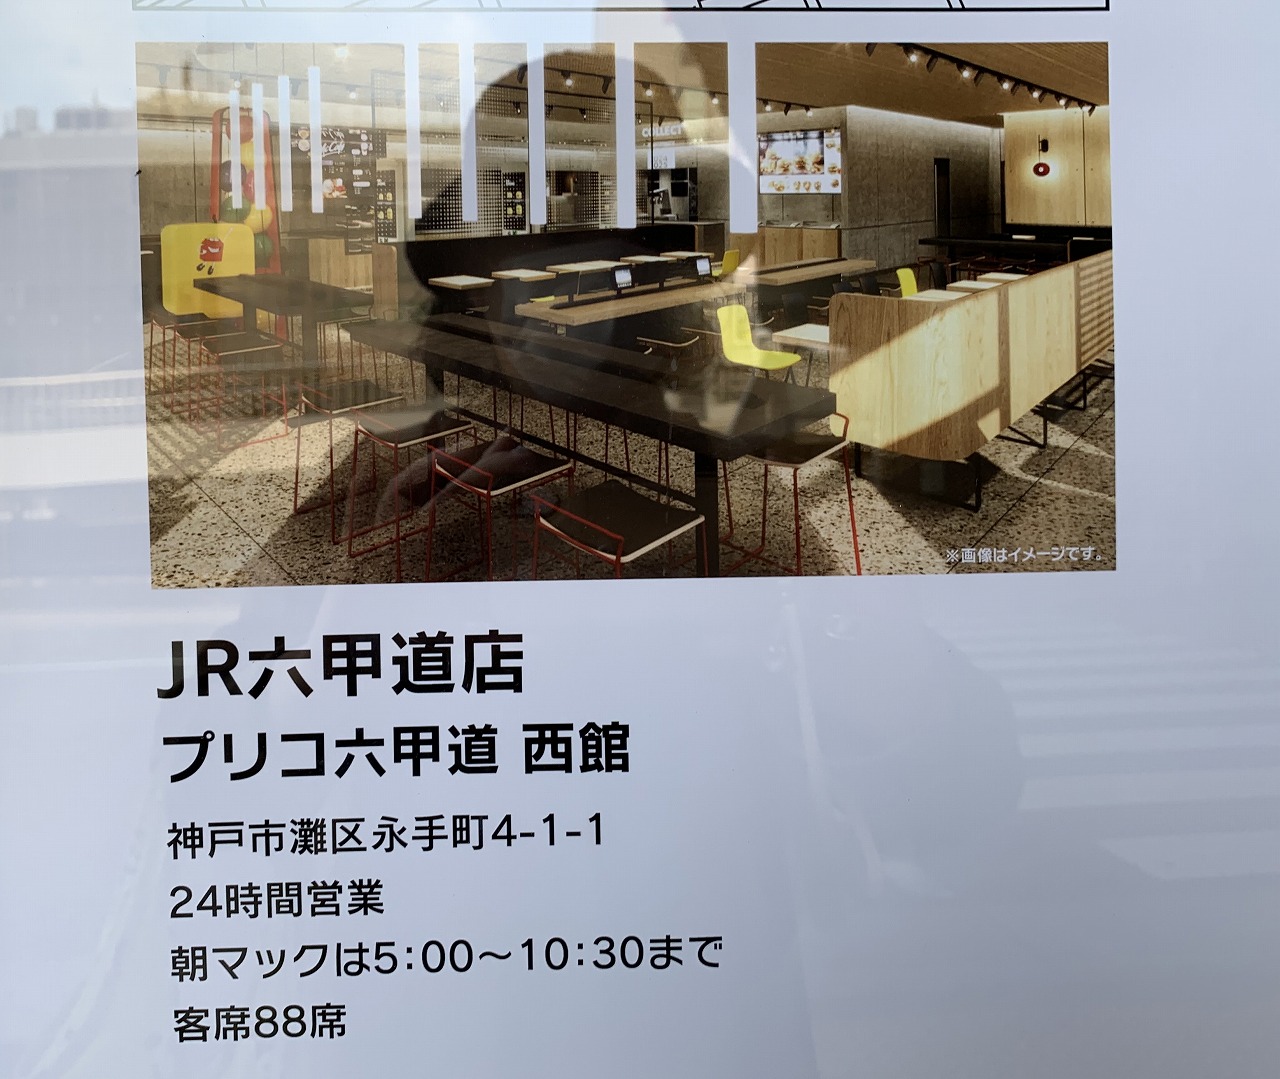 JR六甲道「マクドナルド」